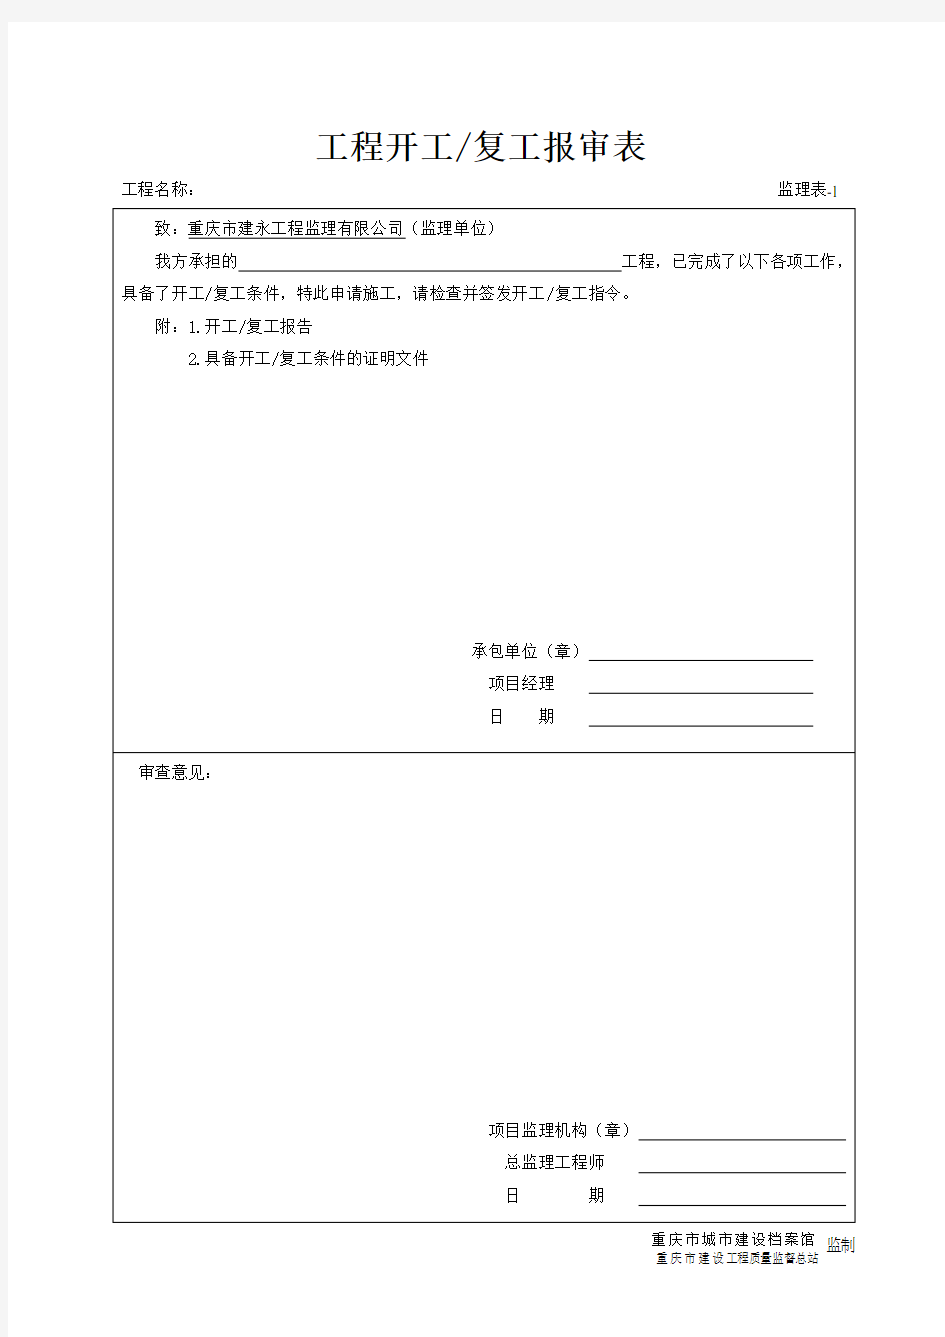 重庆市监理表格标准